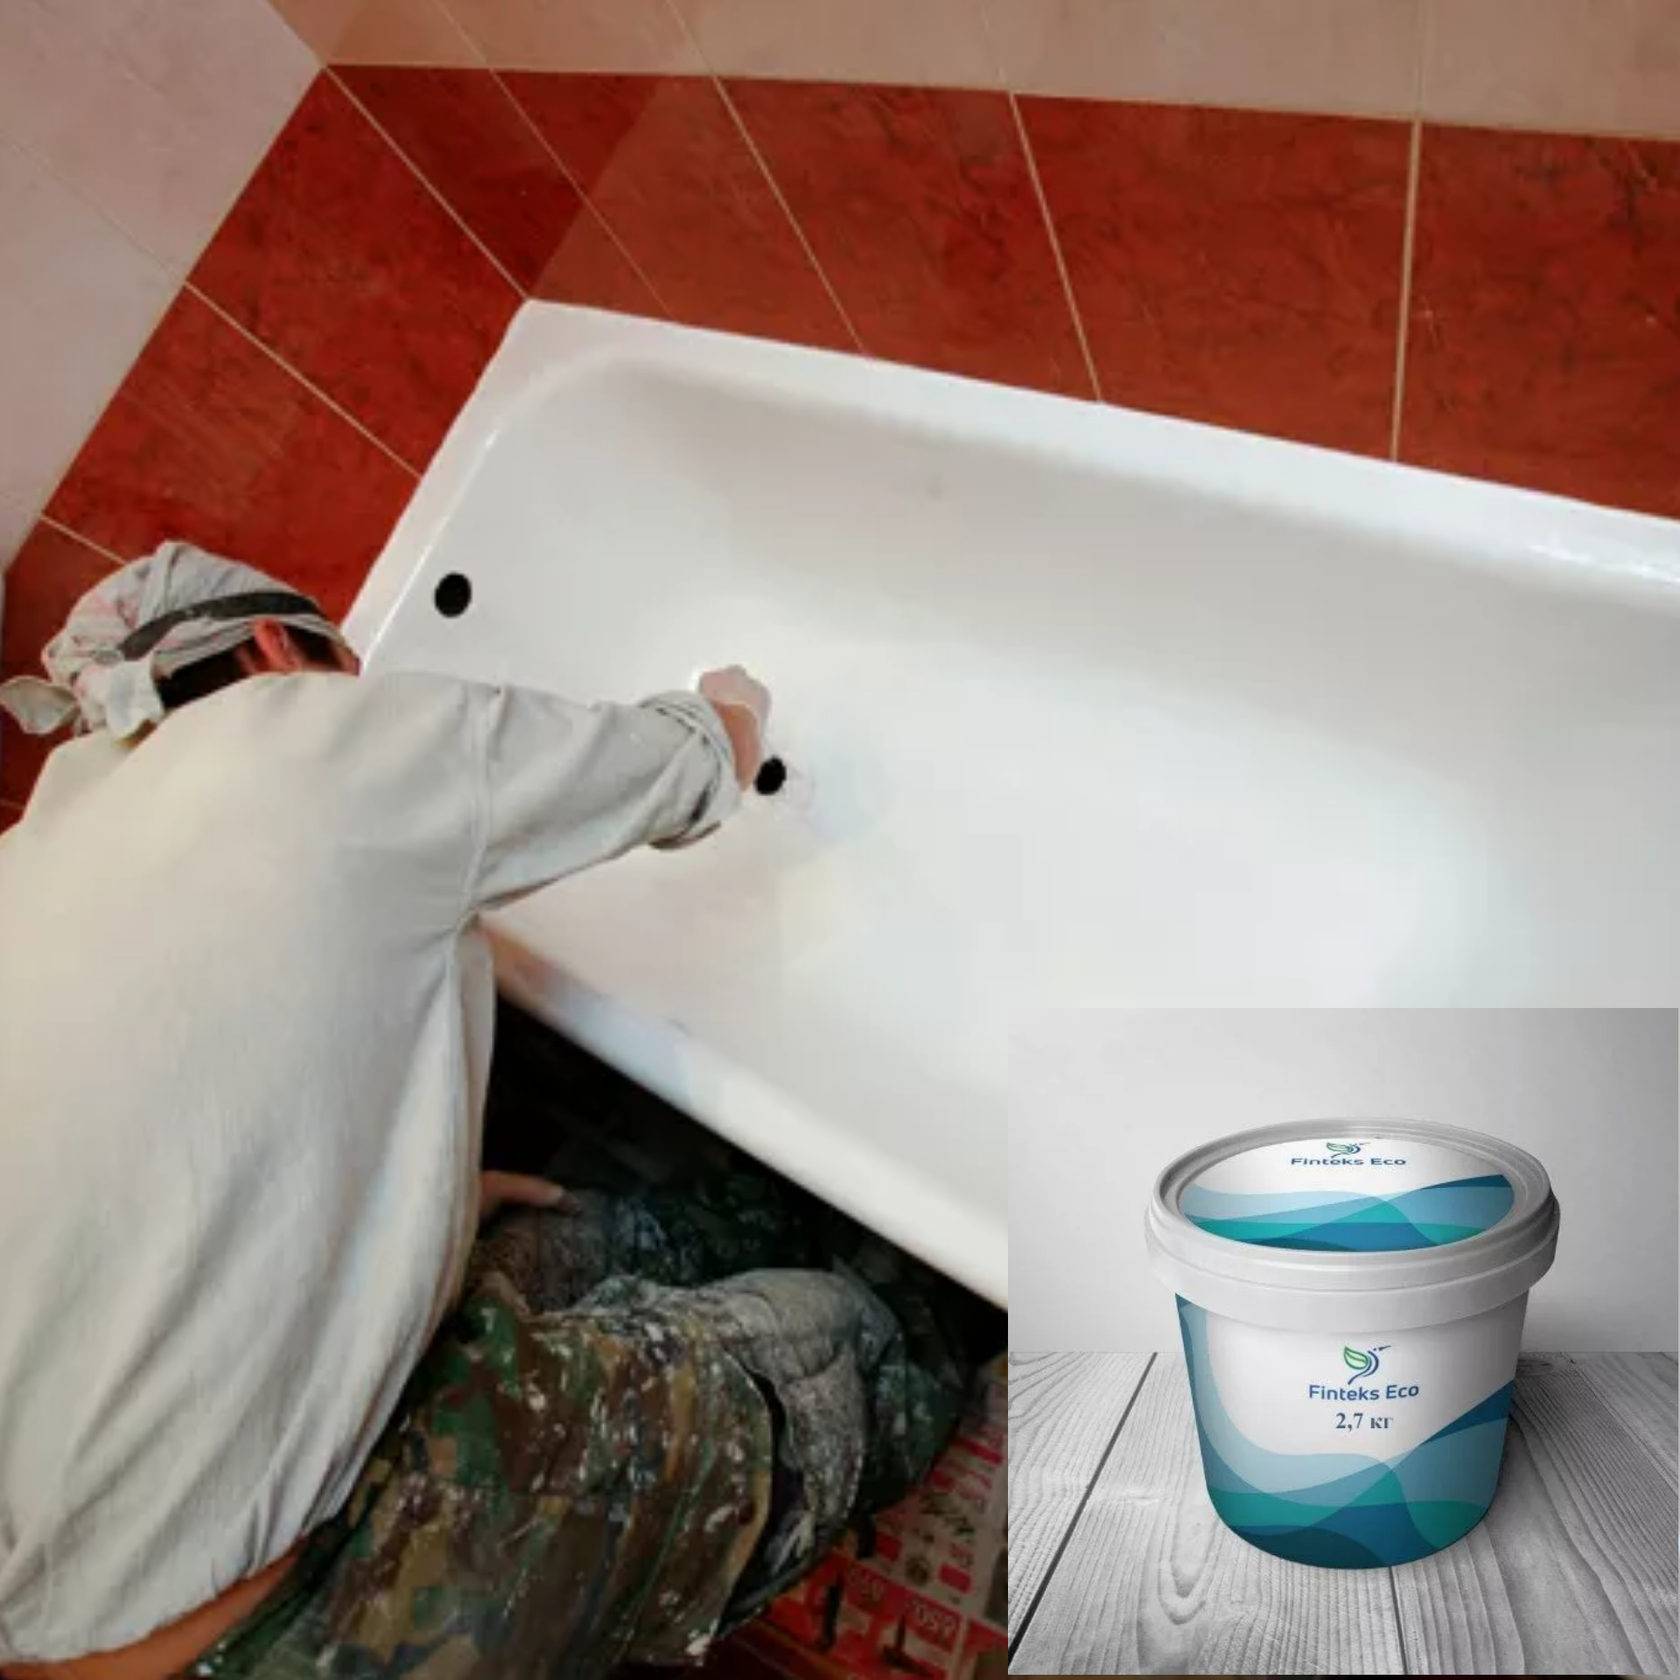 Жидкий акрил. современная технология обновления старой ванны | zastpoyka.ru